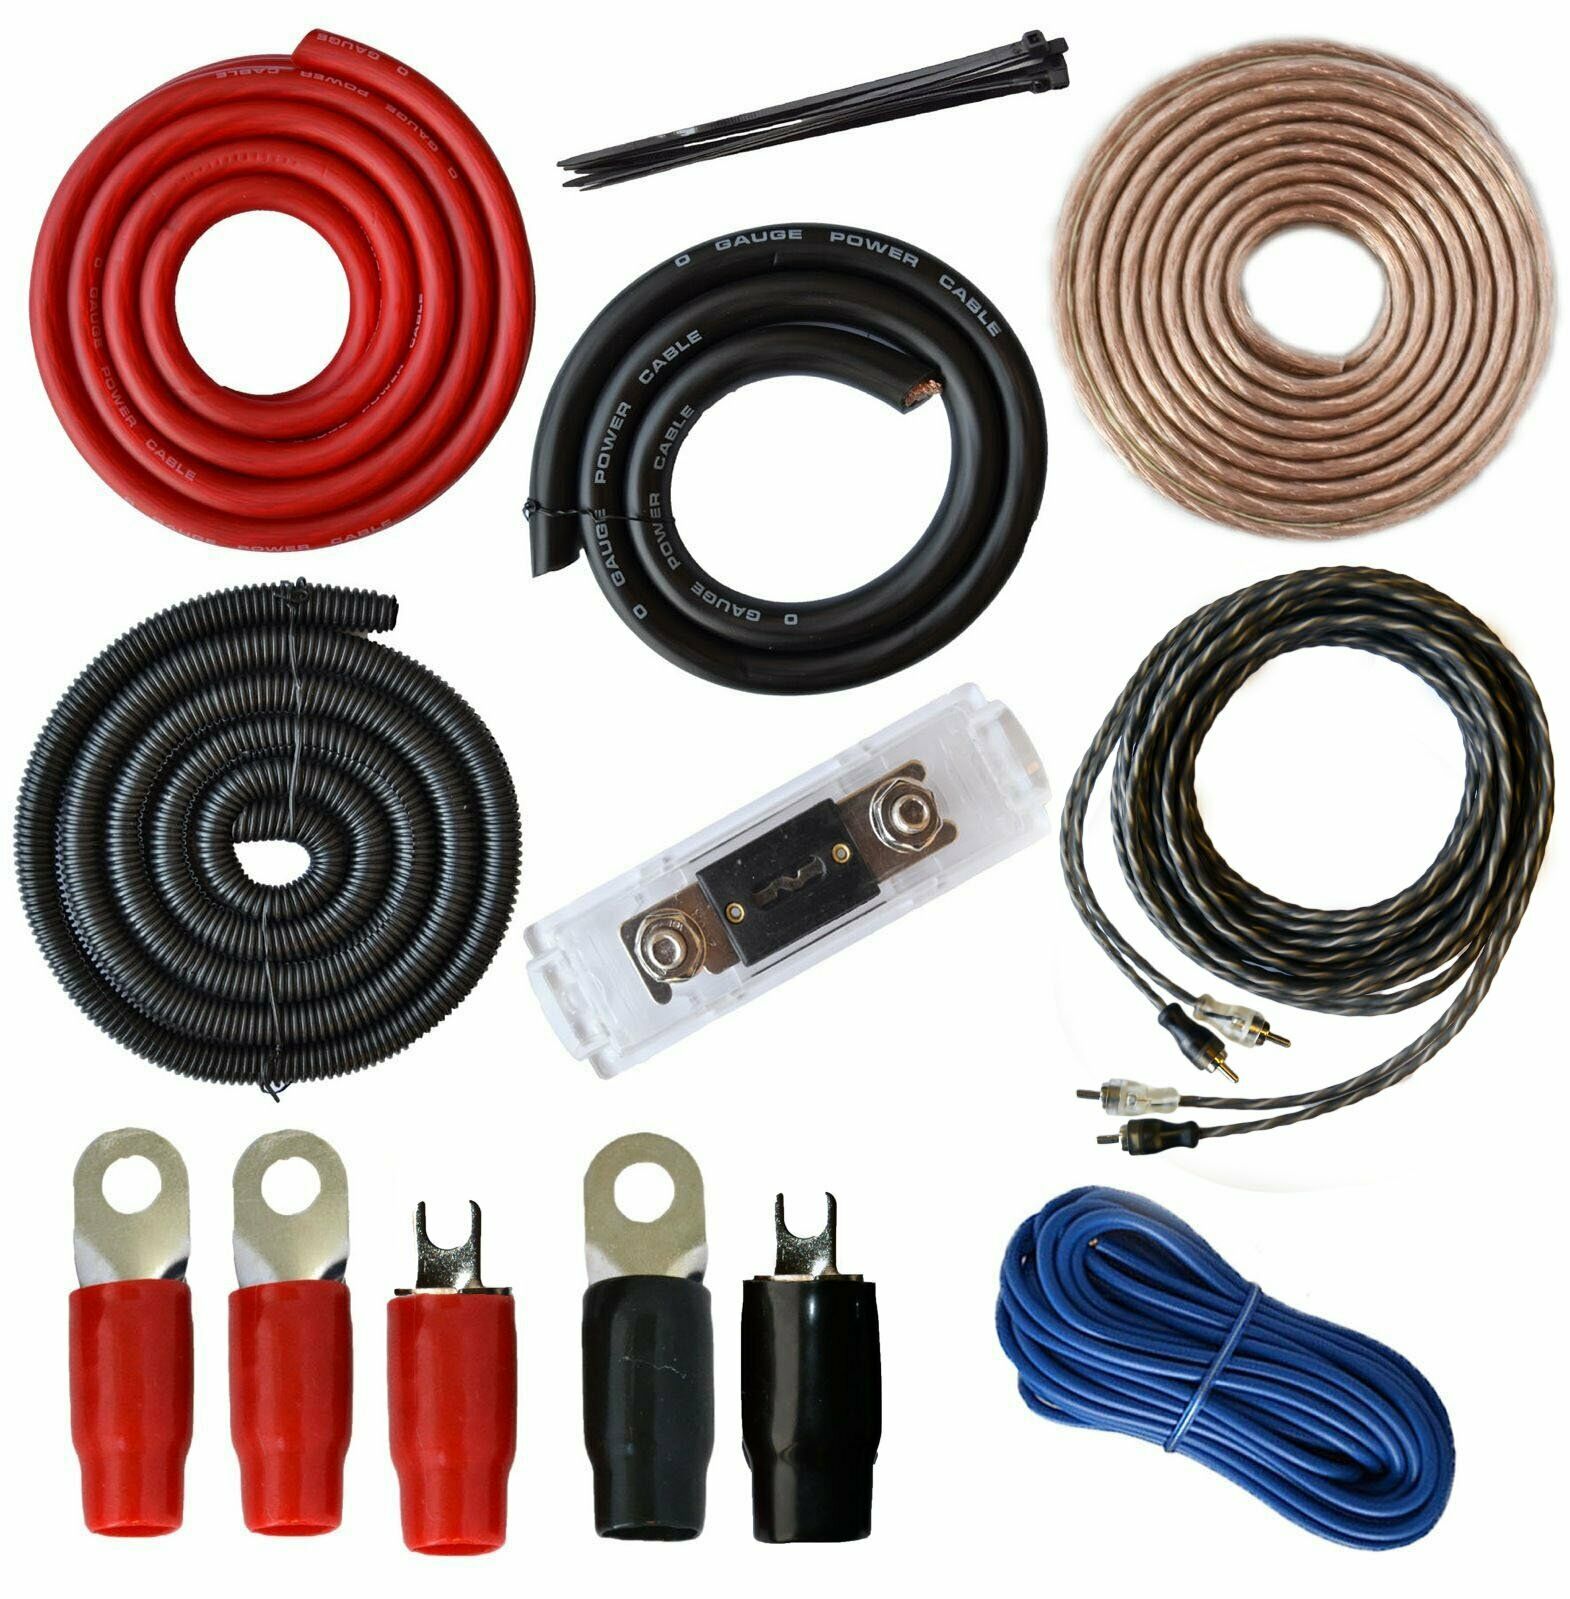 0 Gauge Amp Kit Amplifier Install Wiring & 5 Farad Digital Capacitor, 5000W 859256005938 | eBay